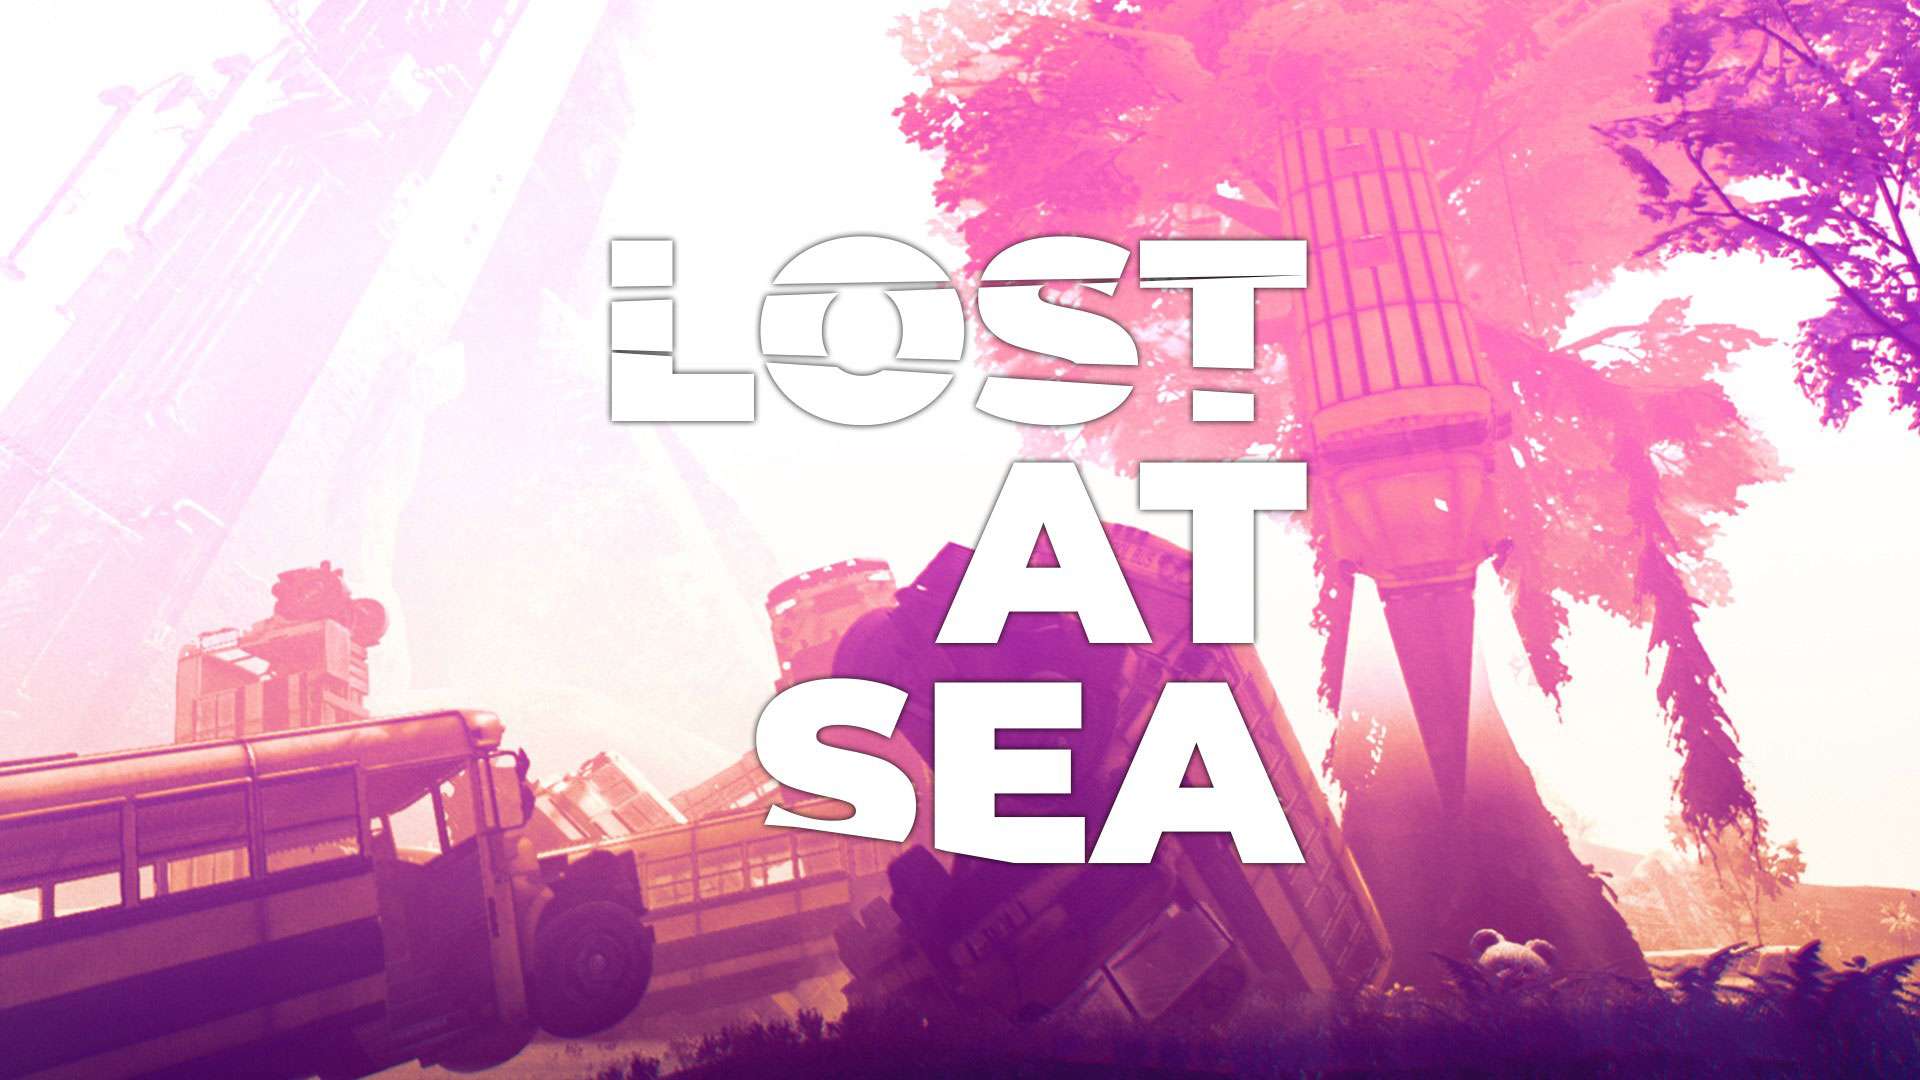 Il videogioco per adulti Lost at Sea (Disperso in mare)